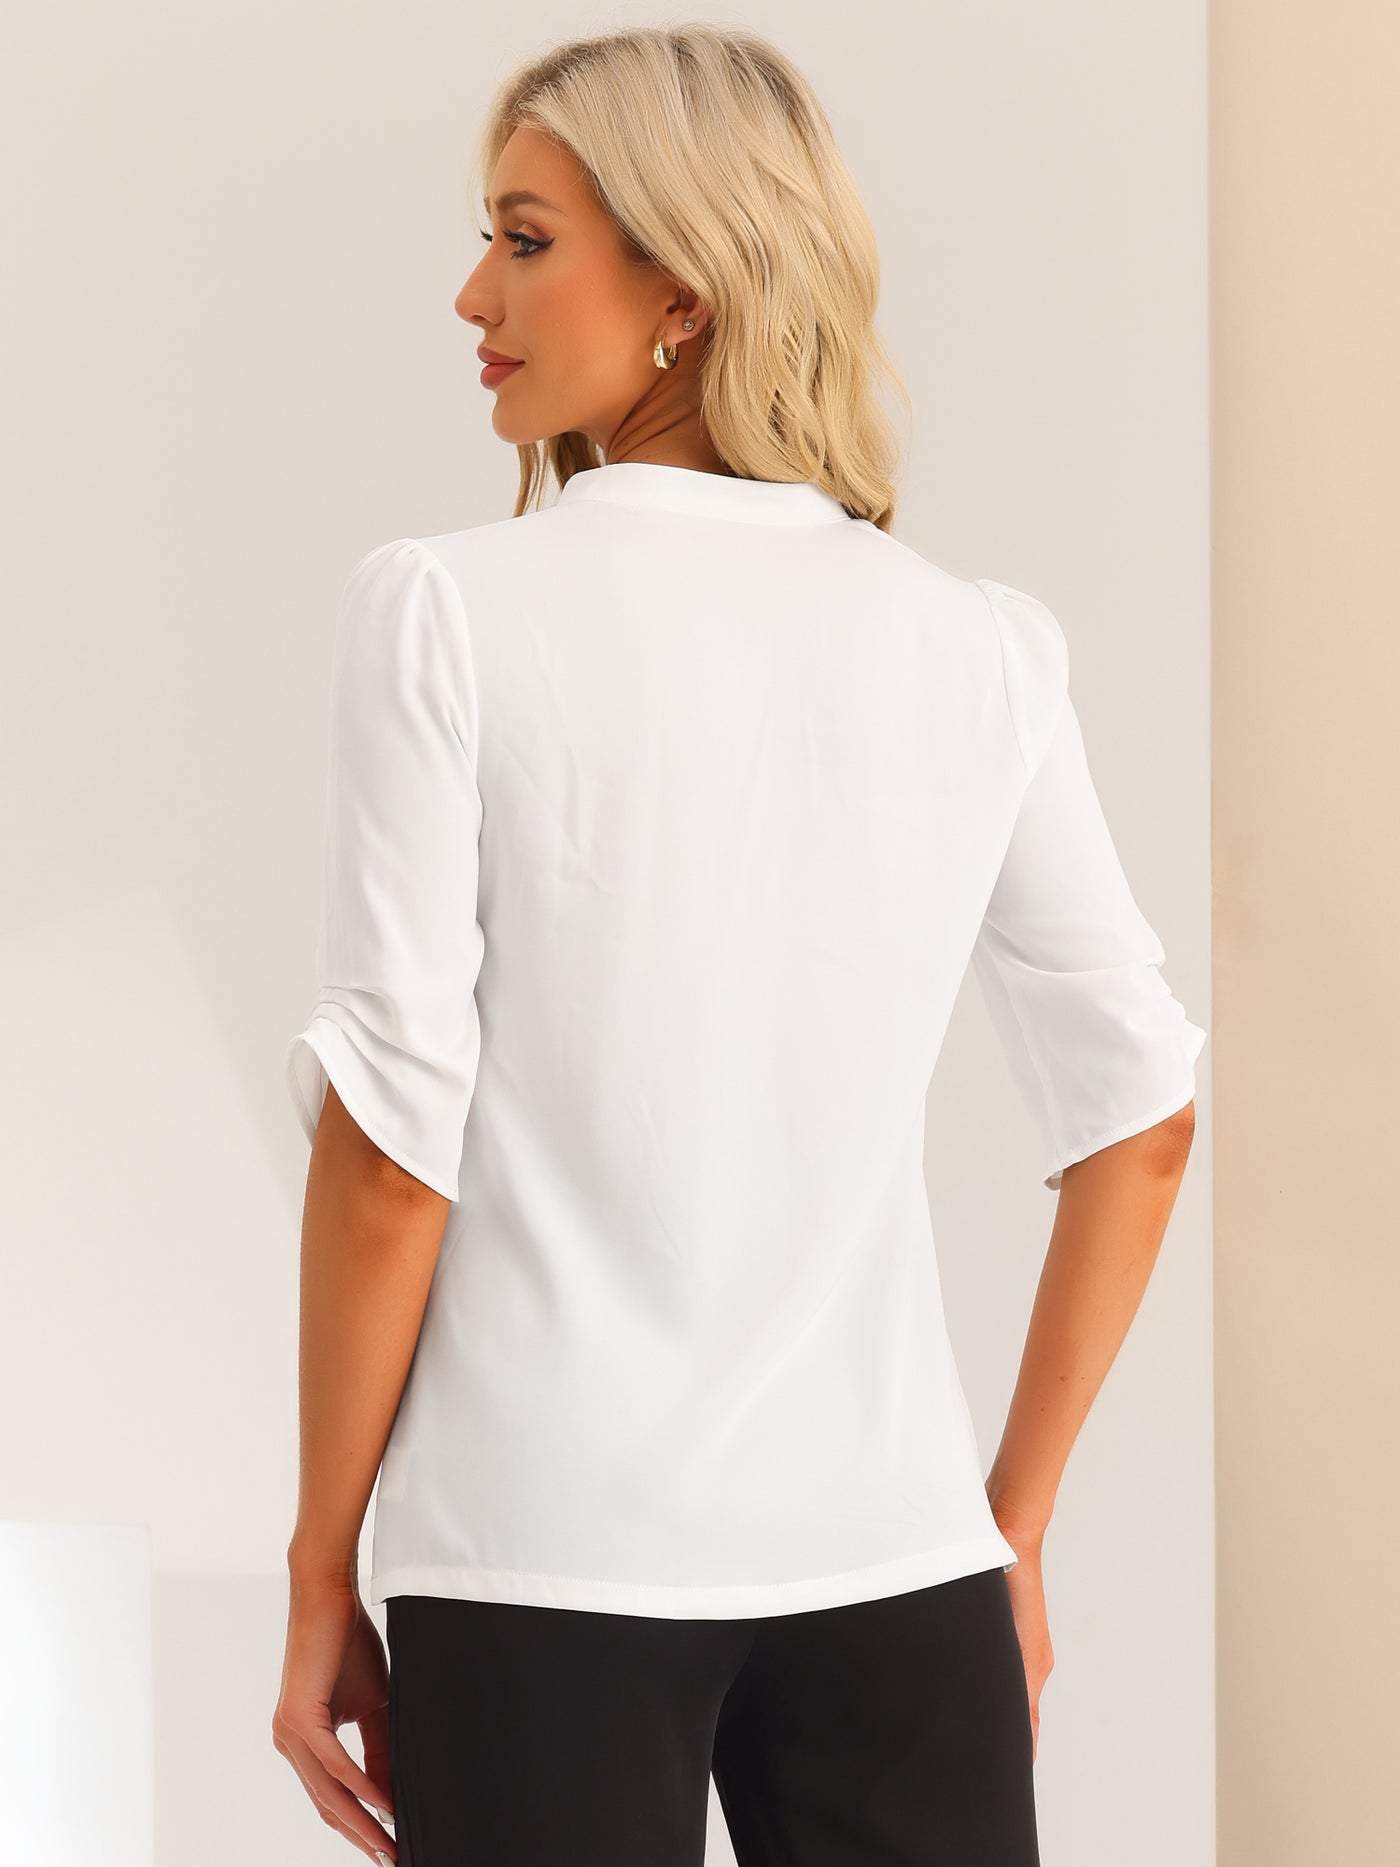 Allegra K Dressy Casual 3/4 Sleeve Tops for Women V Neck Shirt Work Blouses